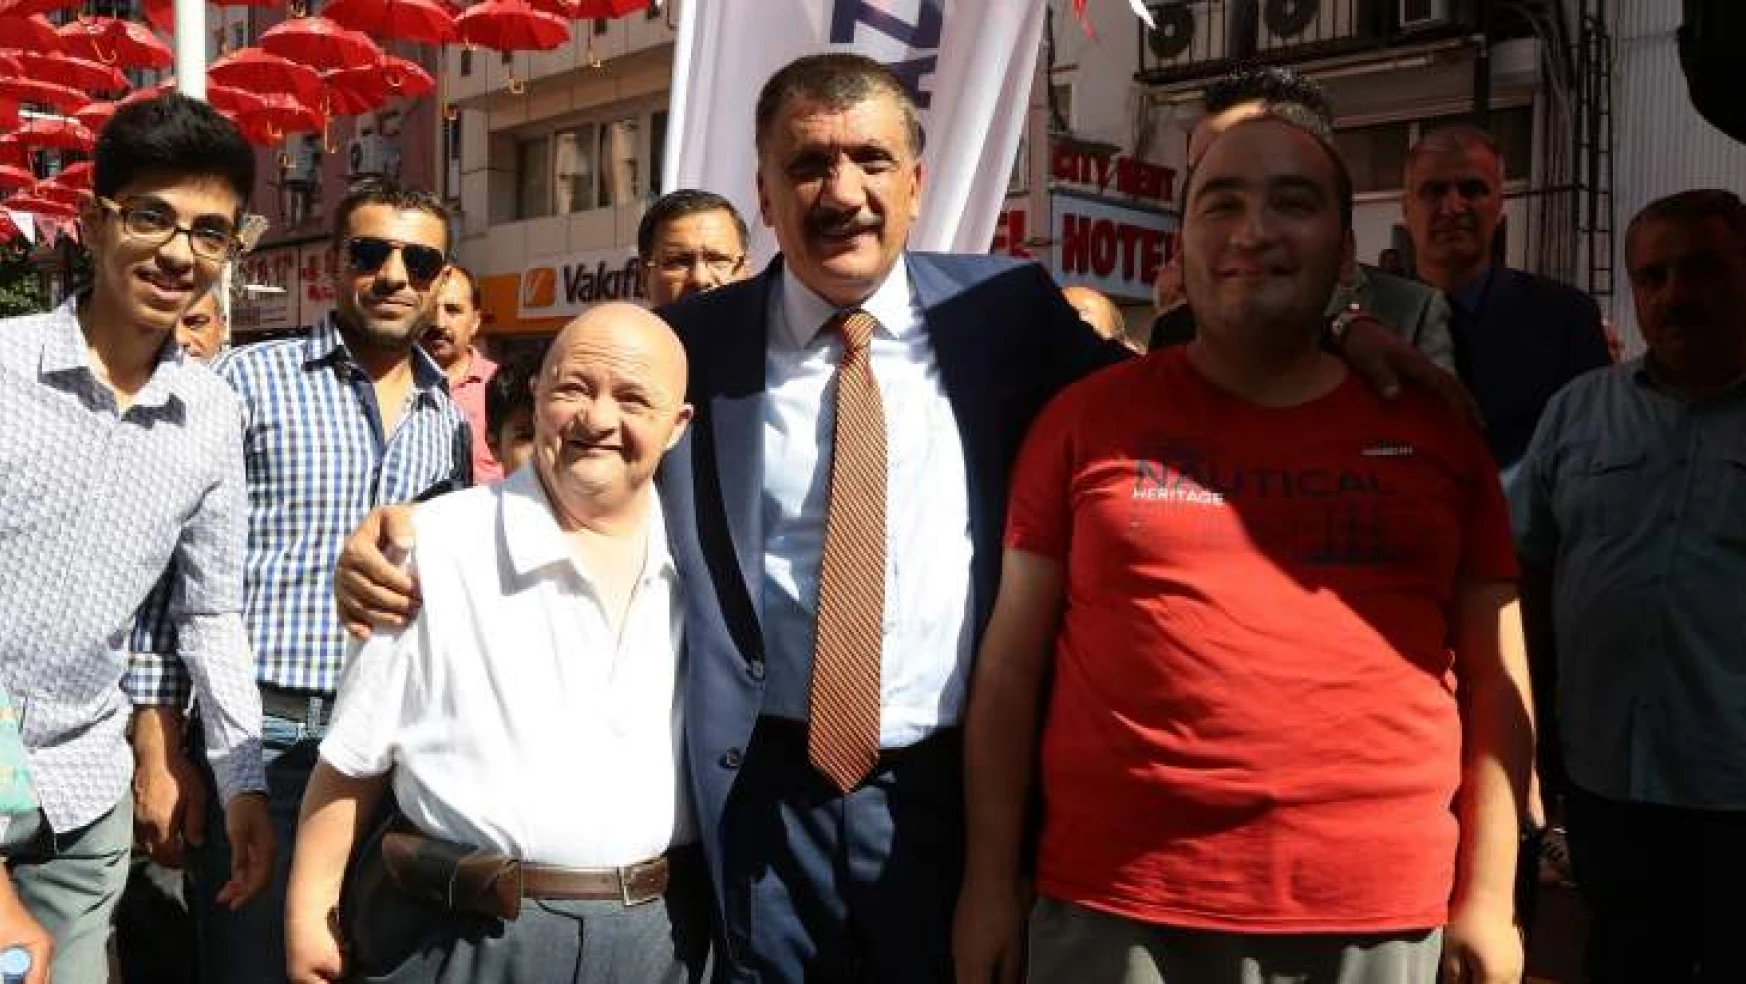 Fahri Kayahan Anısına Türkü Dinletisi Gerçekleştirildi